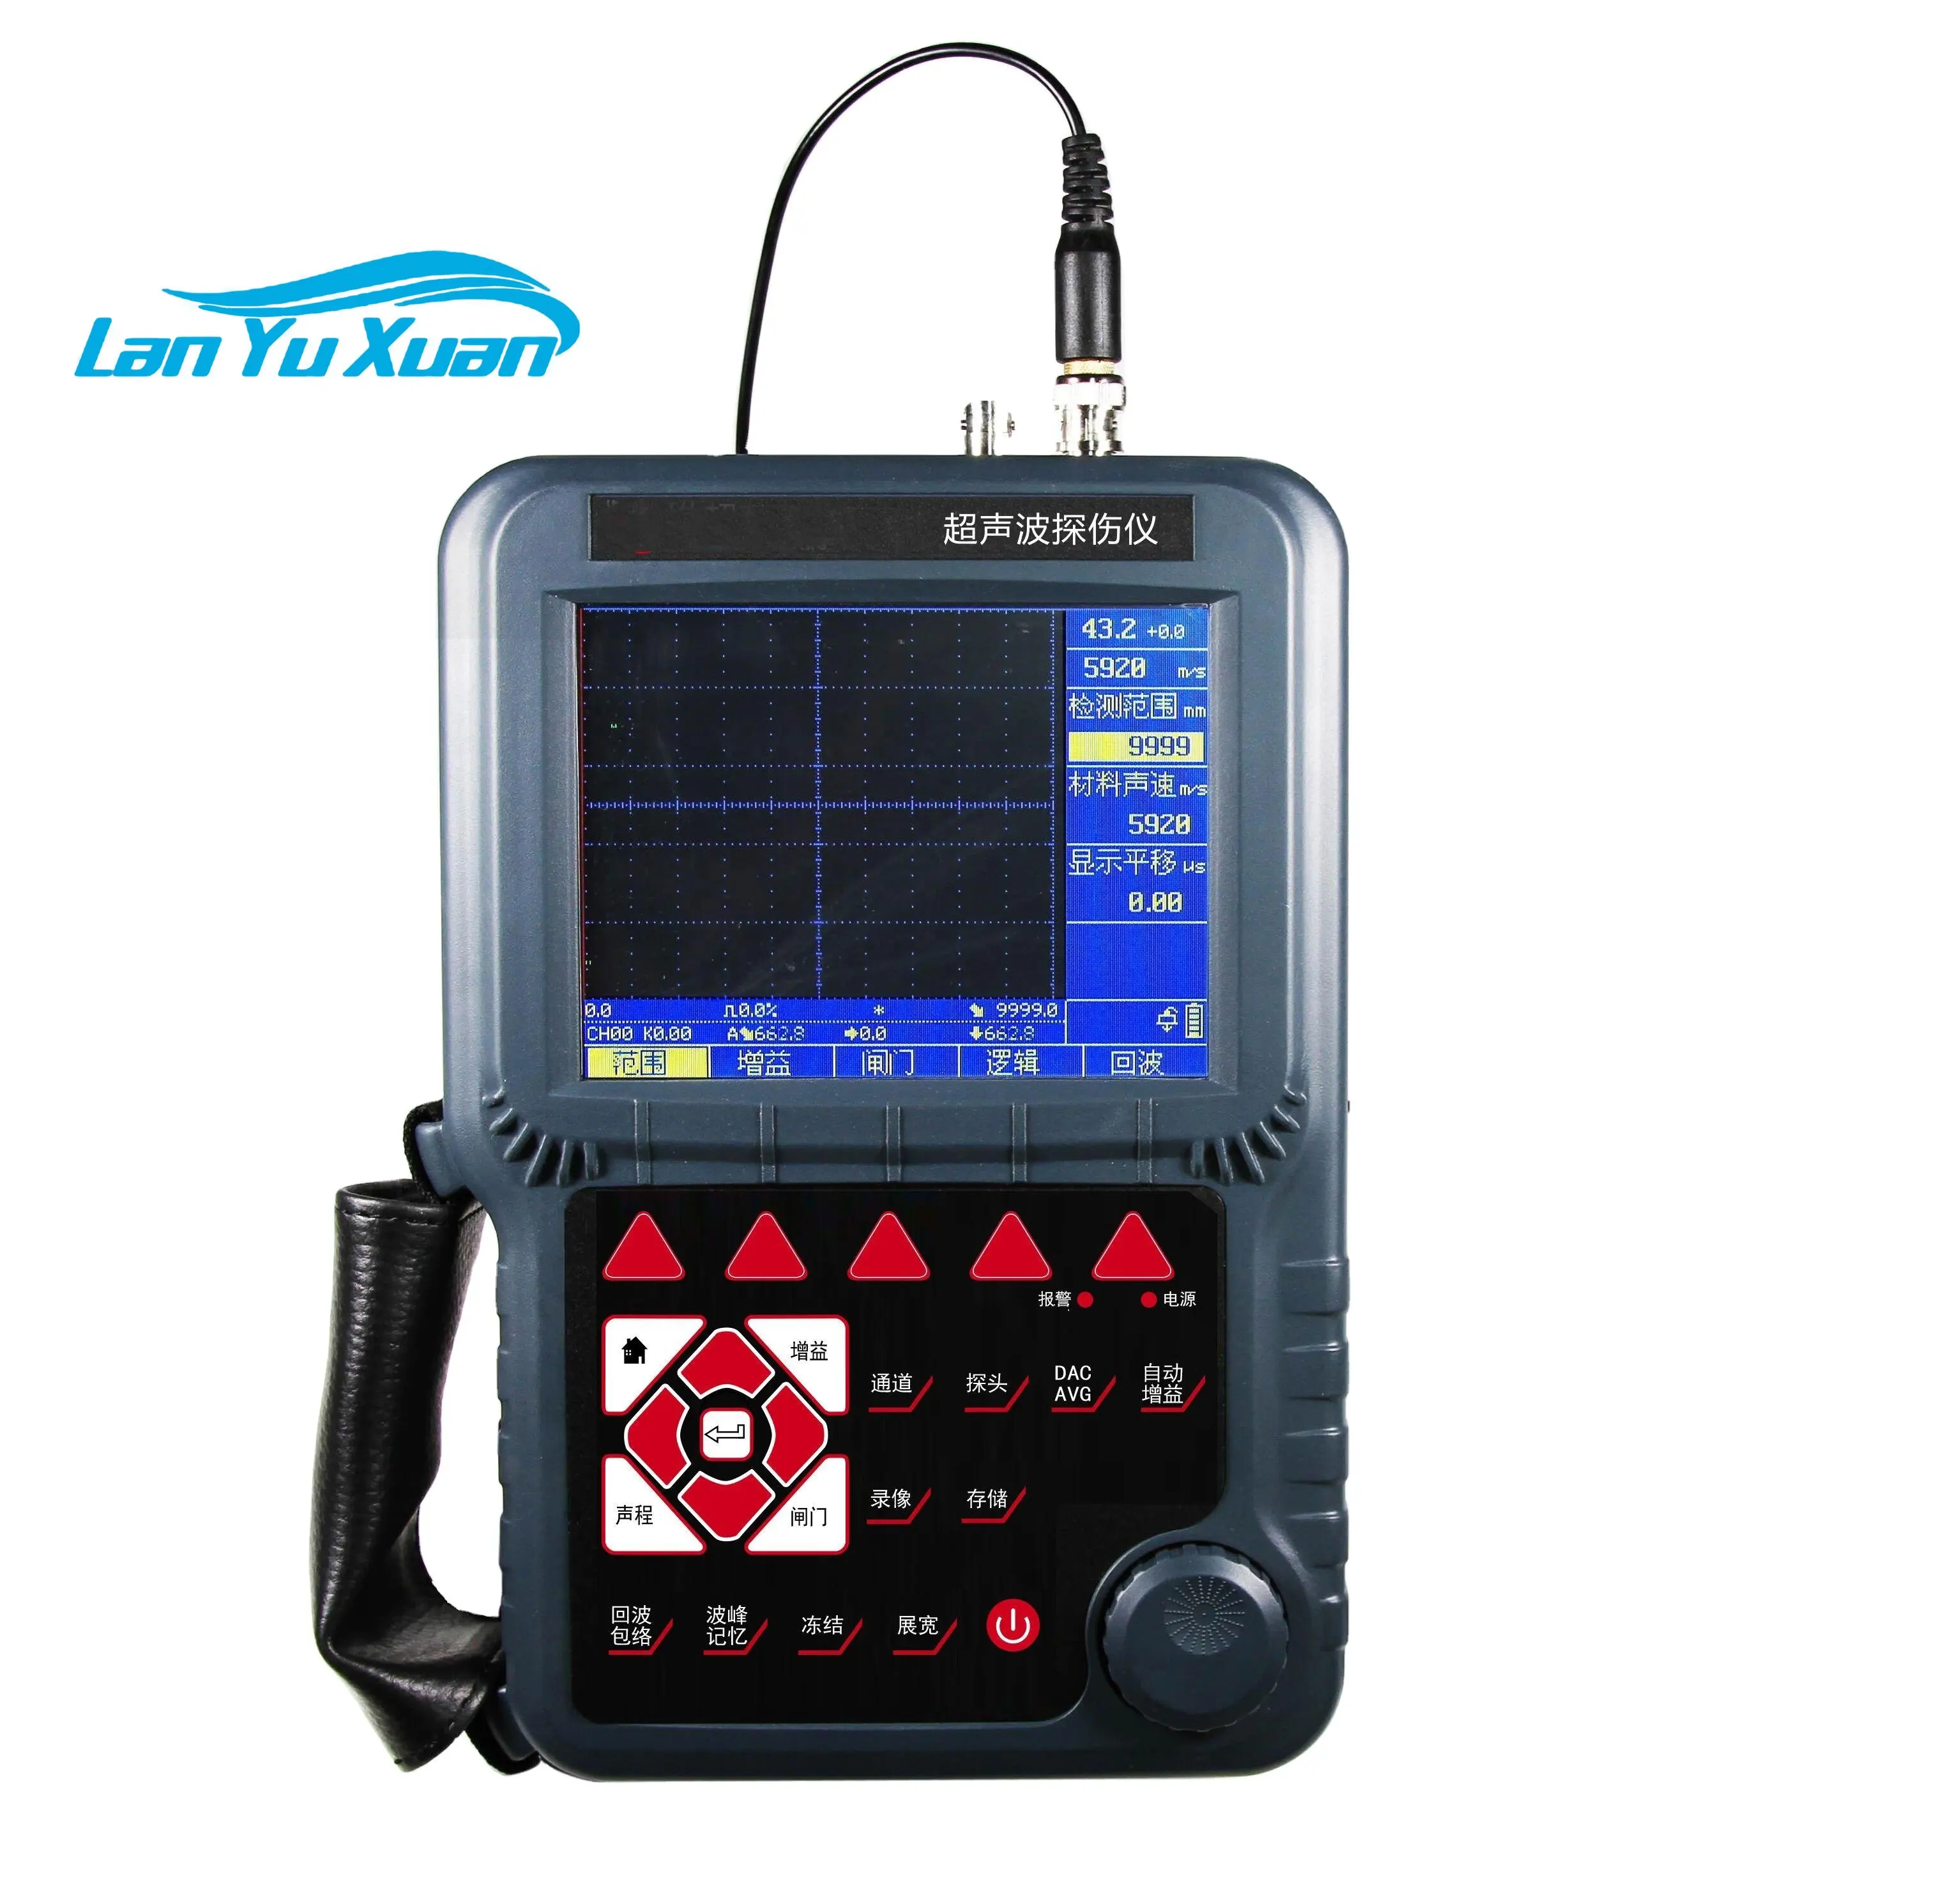 

XH UT600 Digital Ultrasonic Flaw Detector of Testing Equipment like tensiometer ammeter tester best oscilloscope for hobbyist